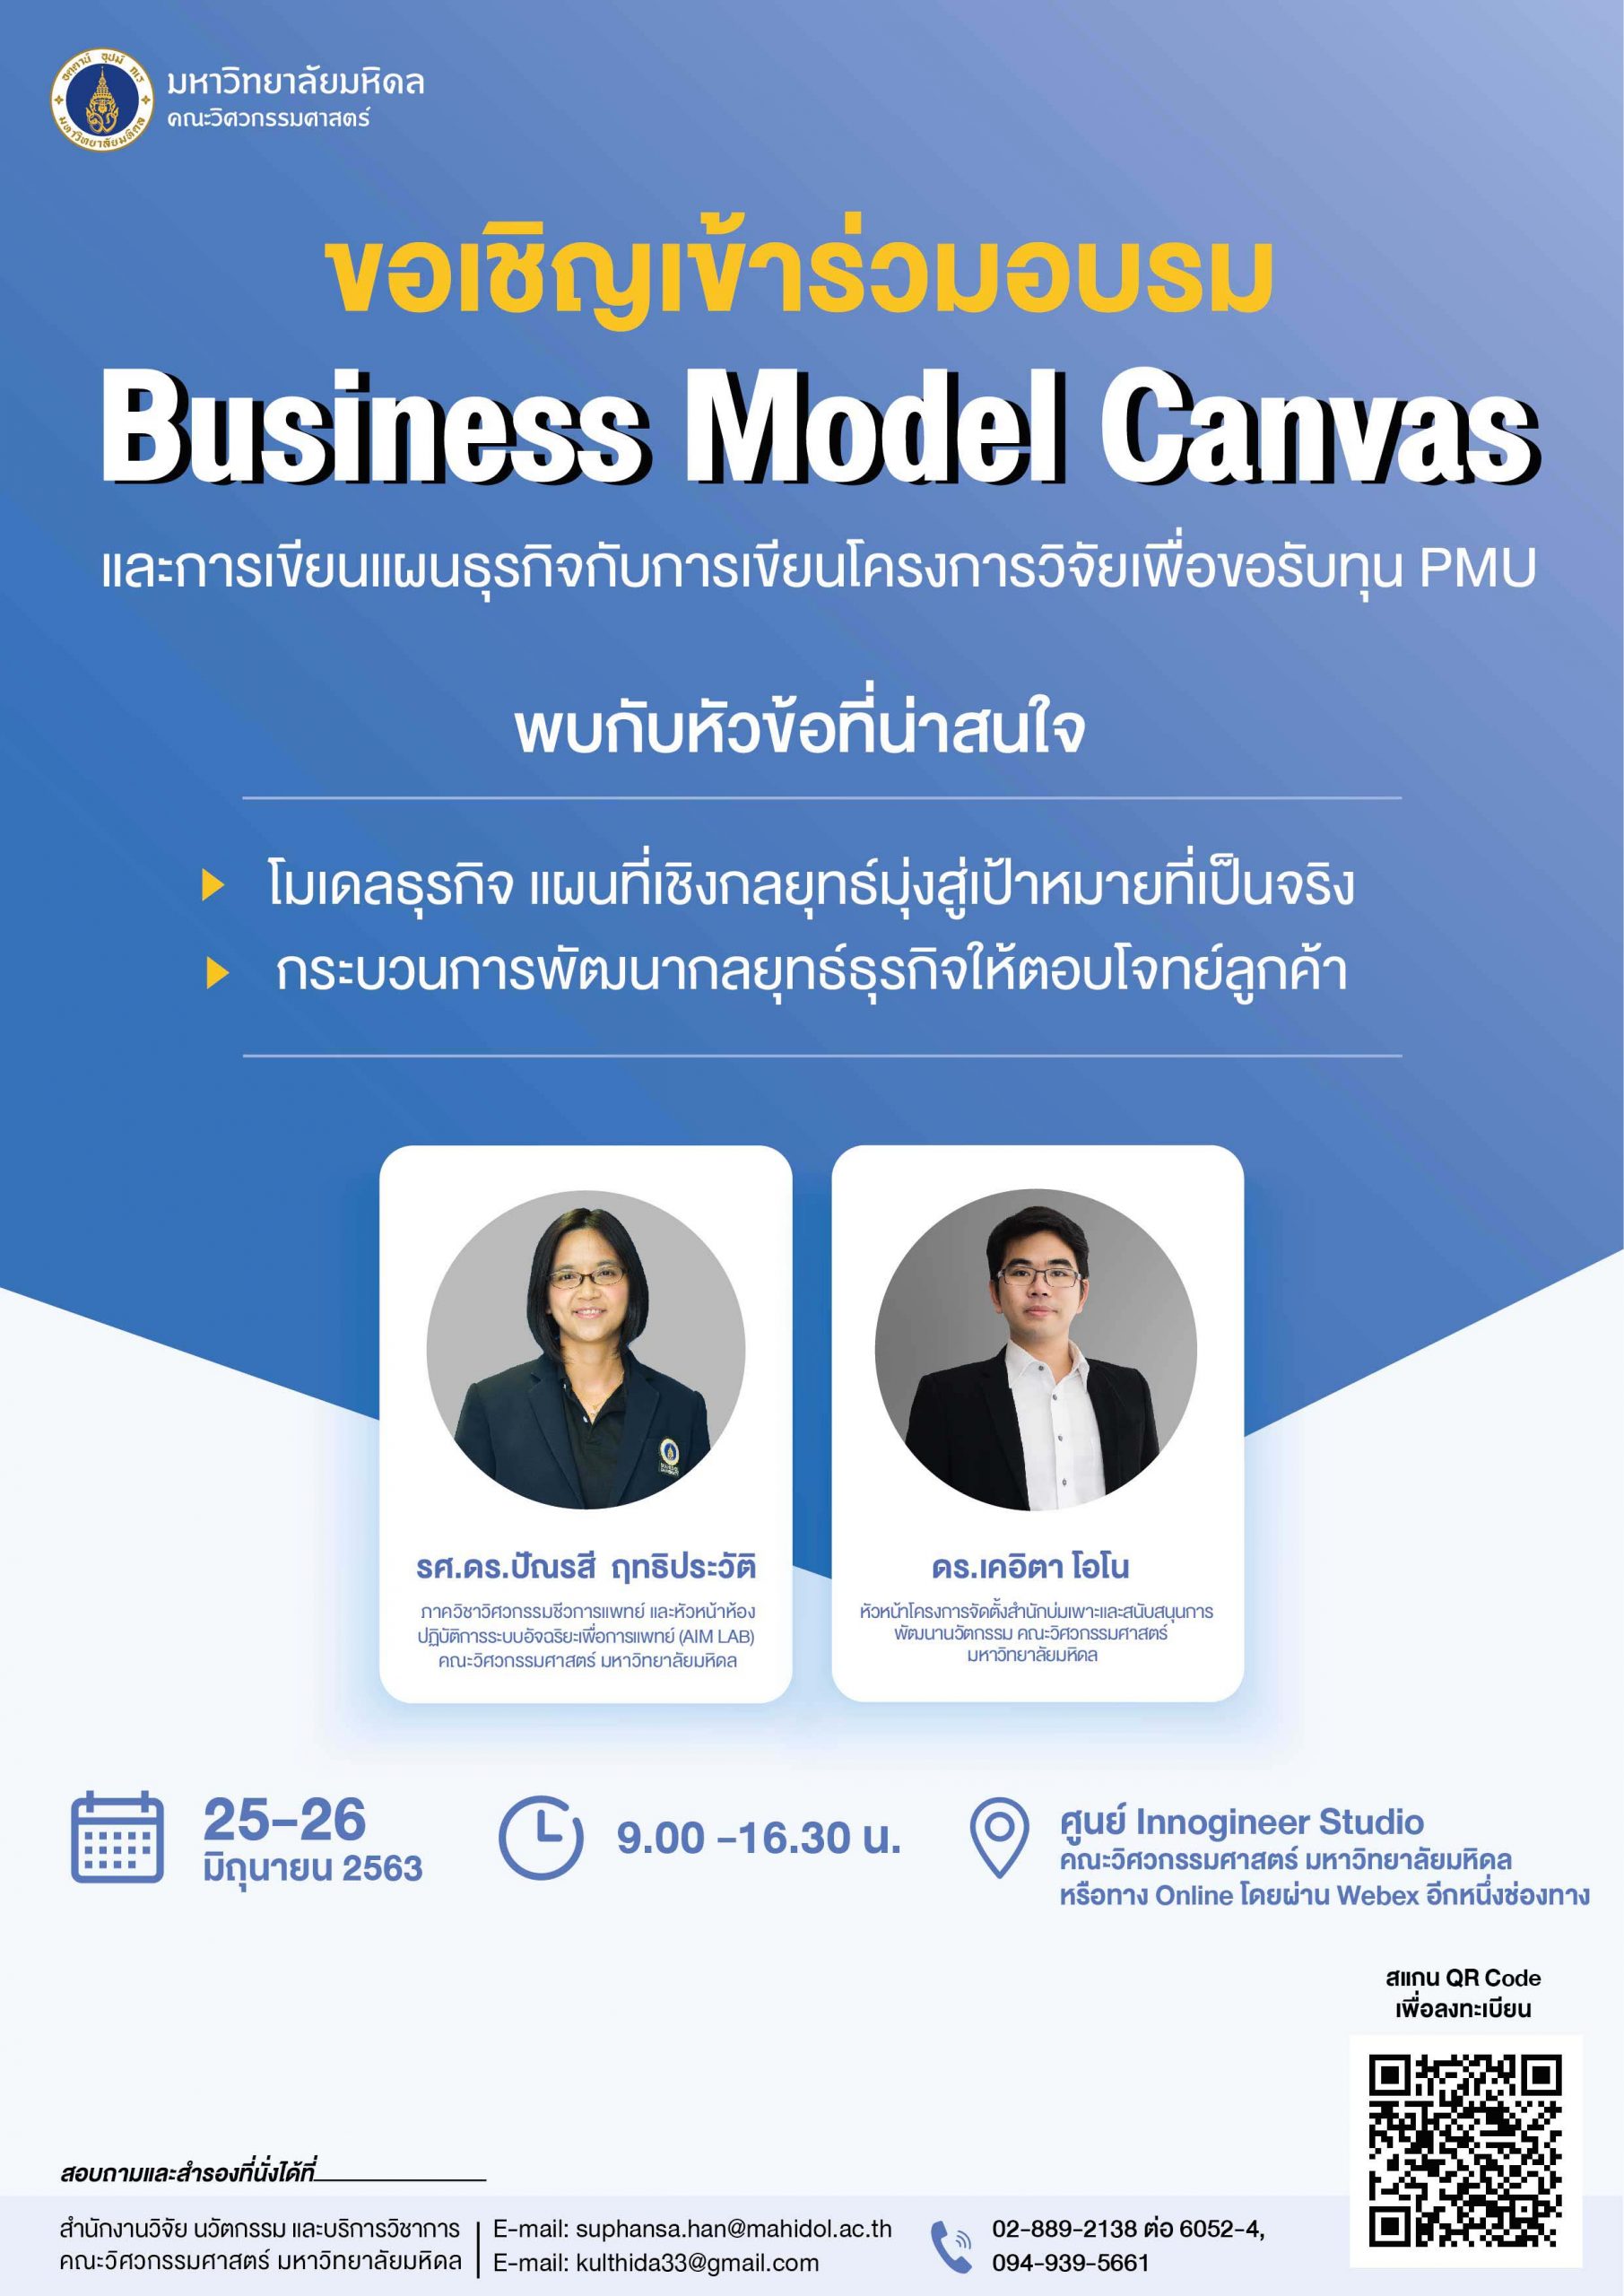 25-26 มิ.ย. 63 วิศวะมหิดล เปิดอบรมเรื่อง Business Model Canvas และการเขียนแผนธุรกิจ